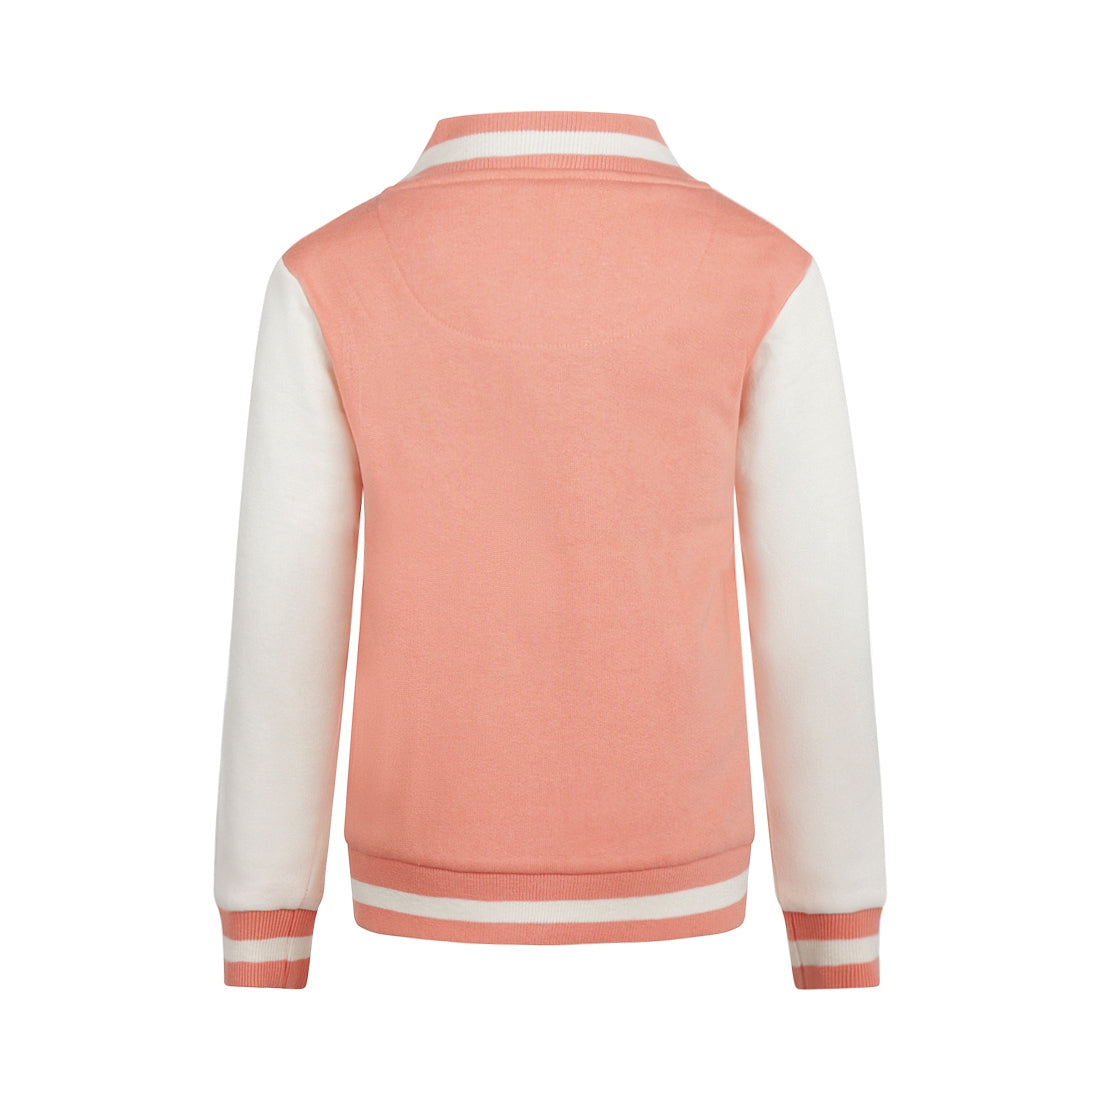 Meisjes Jacket van  in de kleur Coral pink in maat 128.